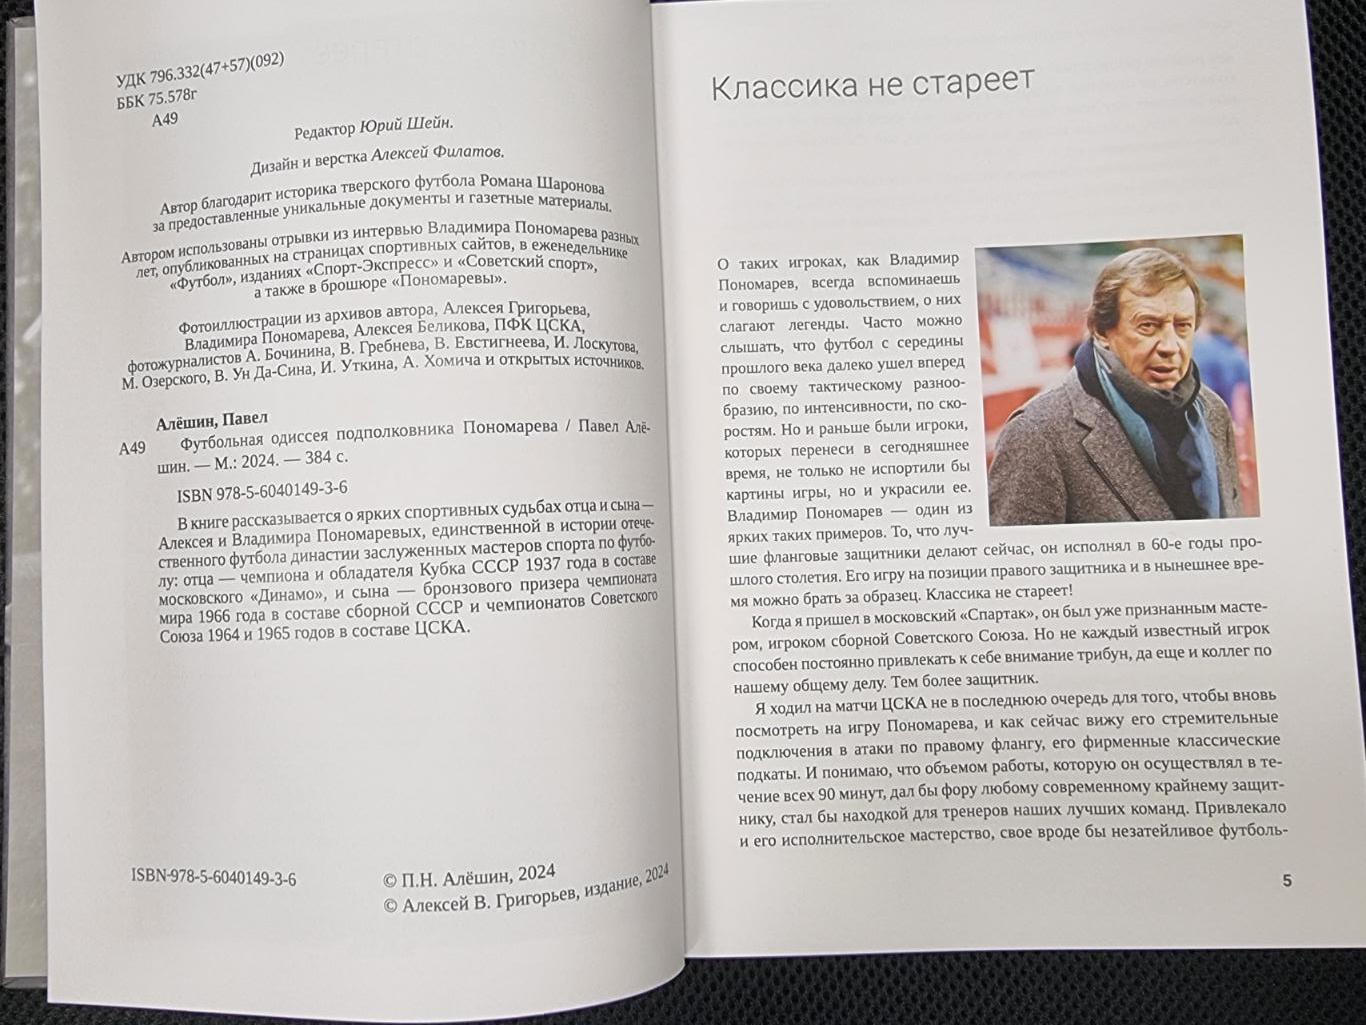 Алёшин П. Футбольная одиссея подполковника Пономарёва. М., 2024, 384 стр. 1